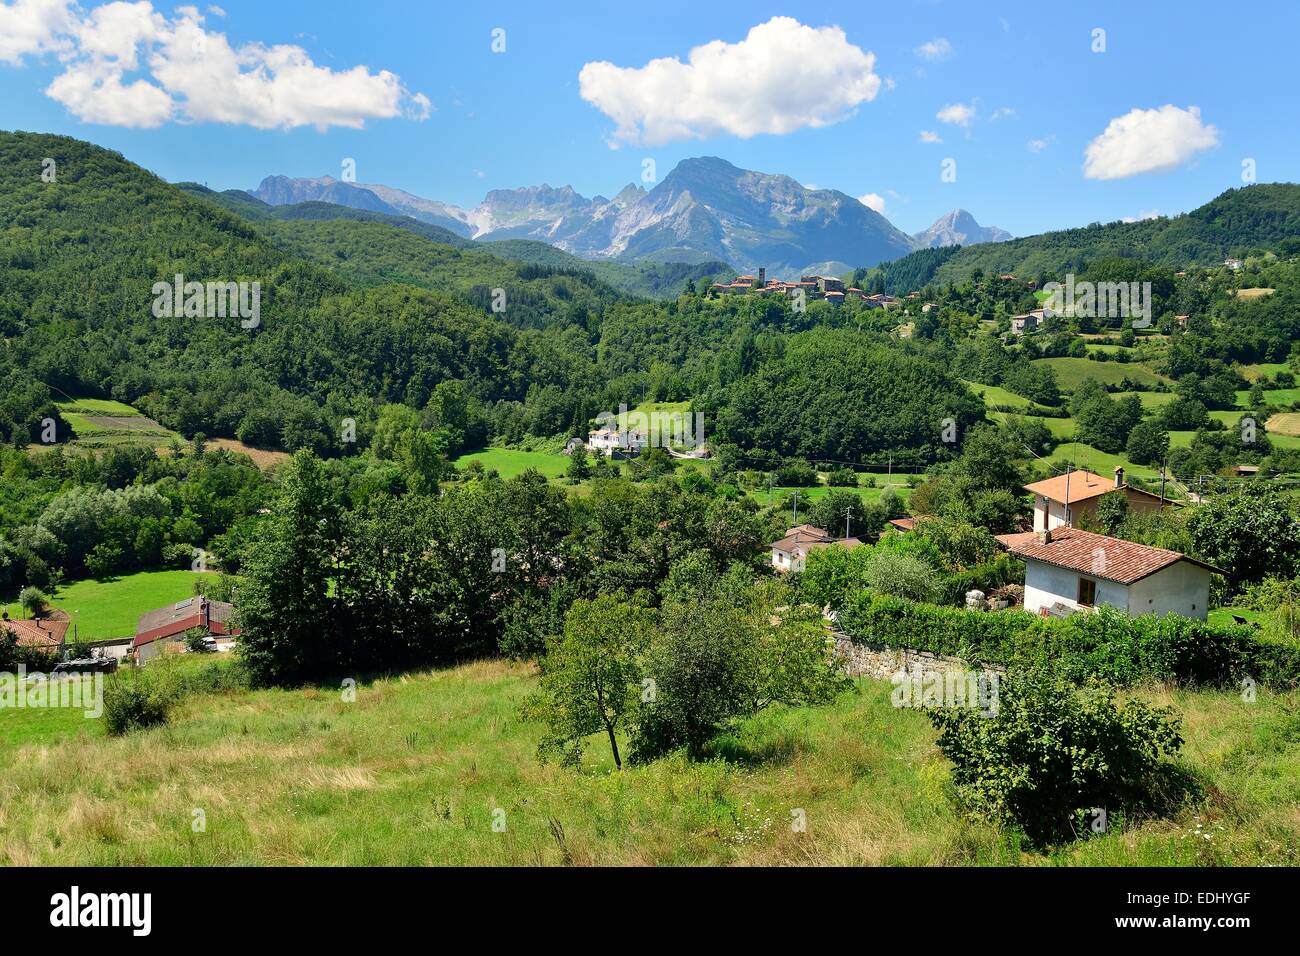 Il paesaggio delle Alpi Apuane, nei pressi di San Michele, Garfagnana in provincia di Lucca - Toscana, Italia Foto Stock